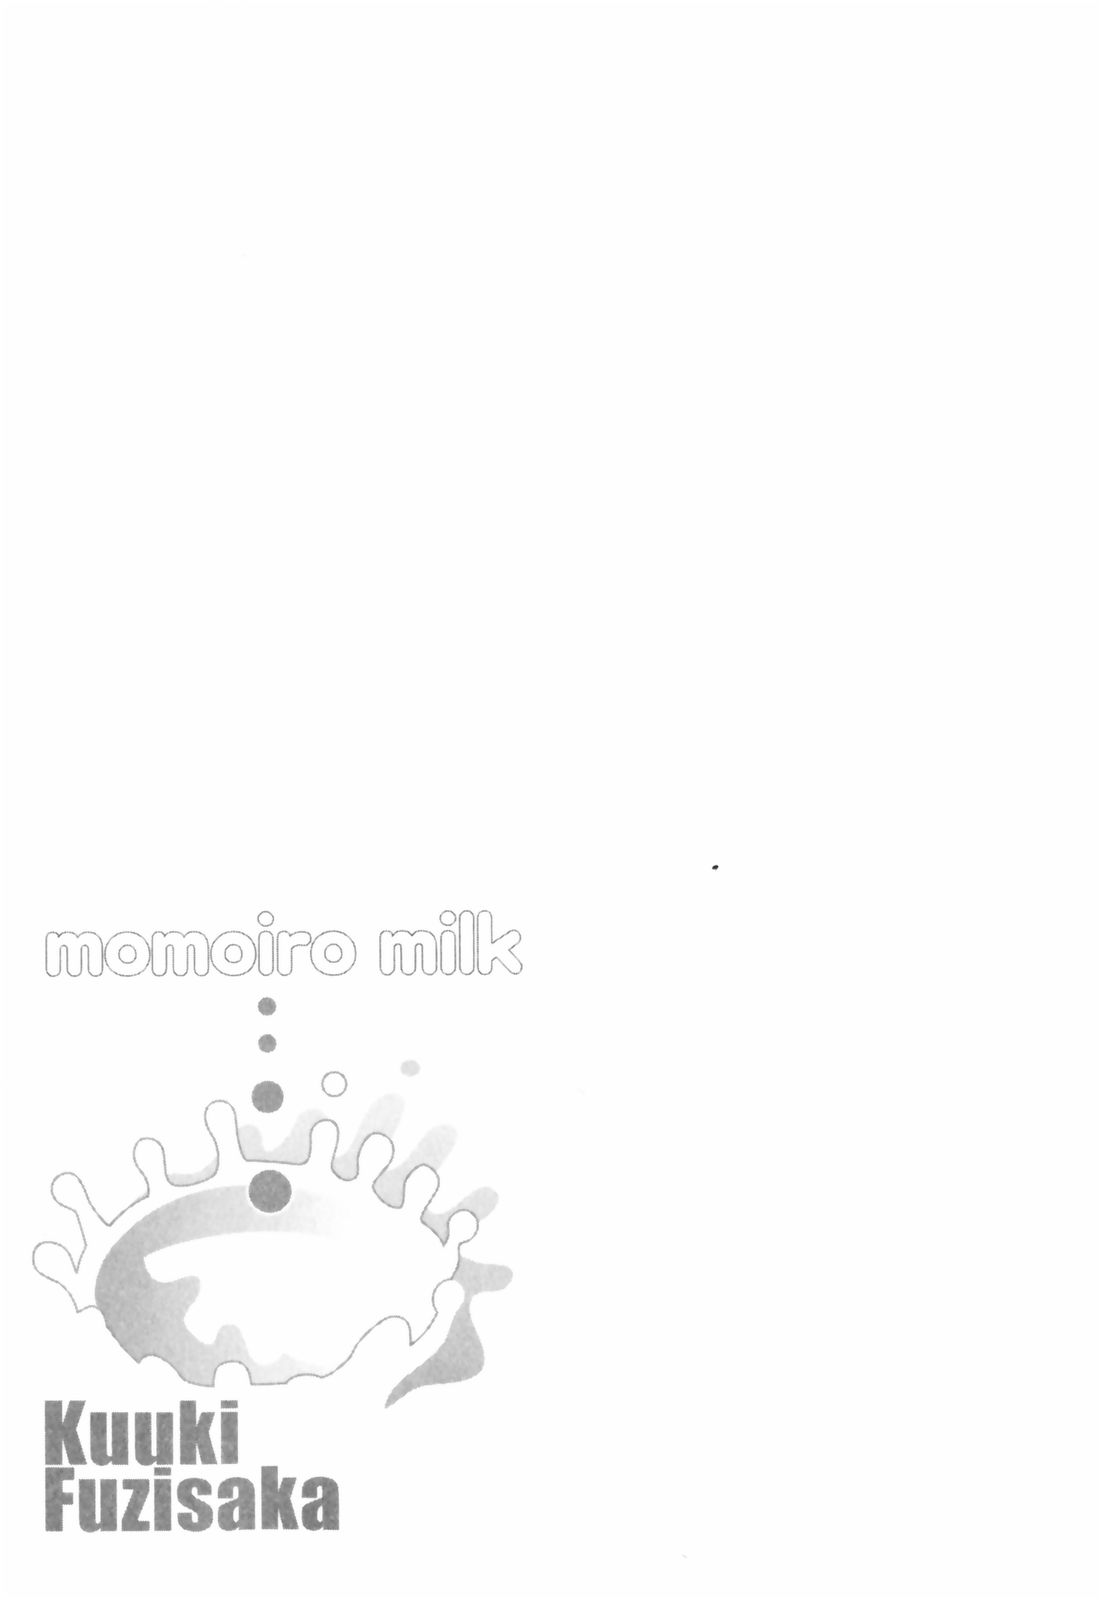 [藤坂空樹] ももいろミルク